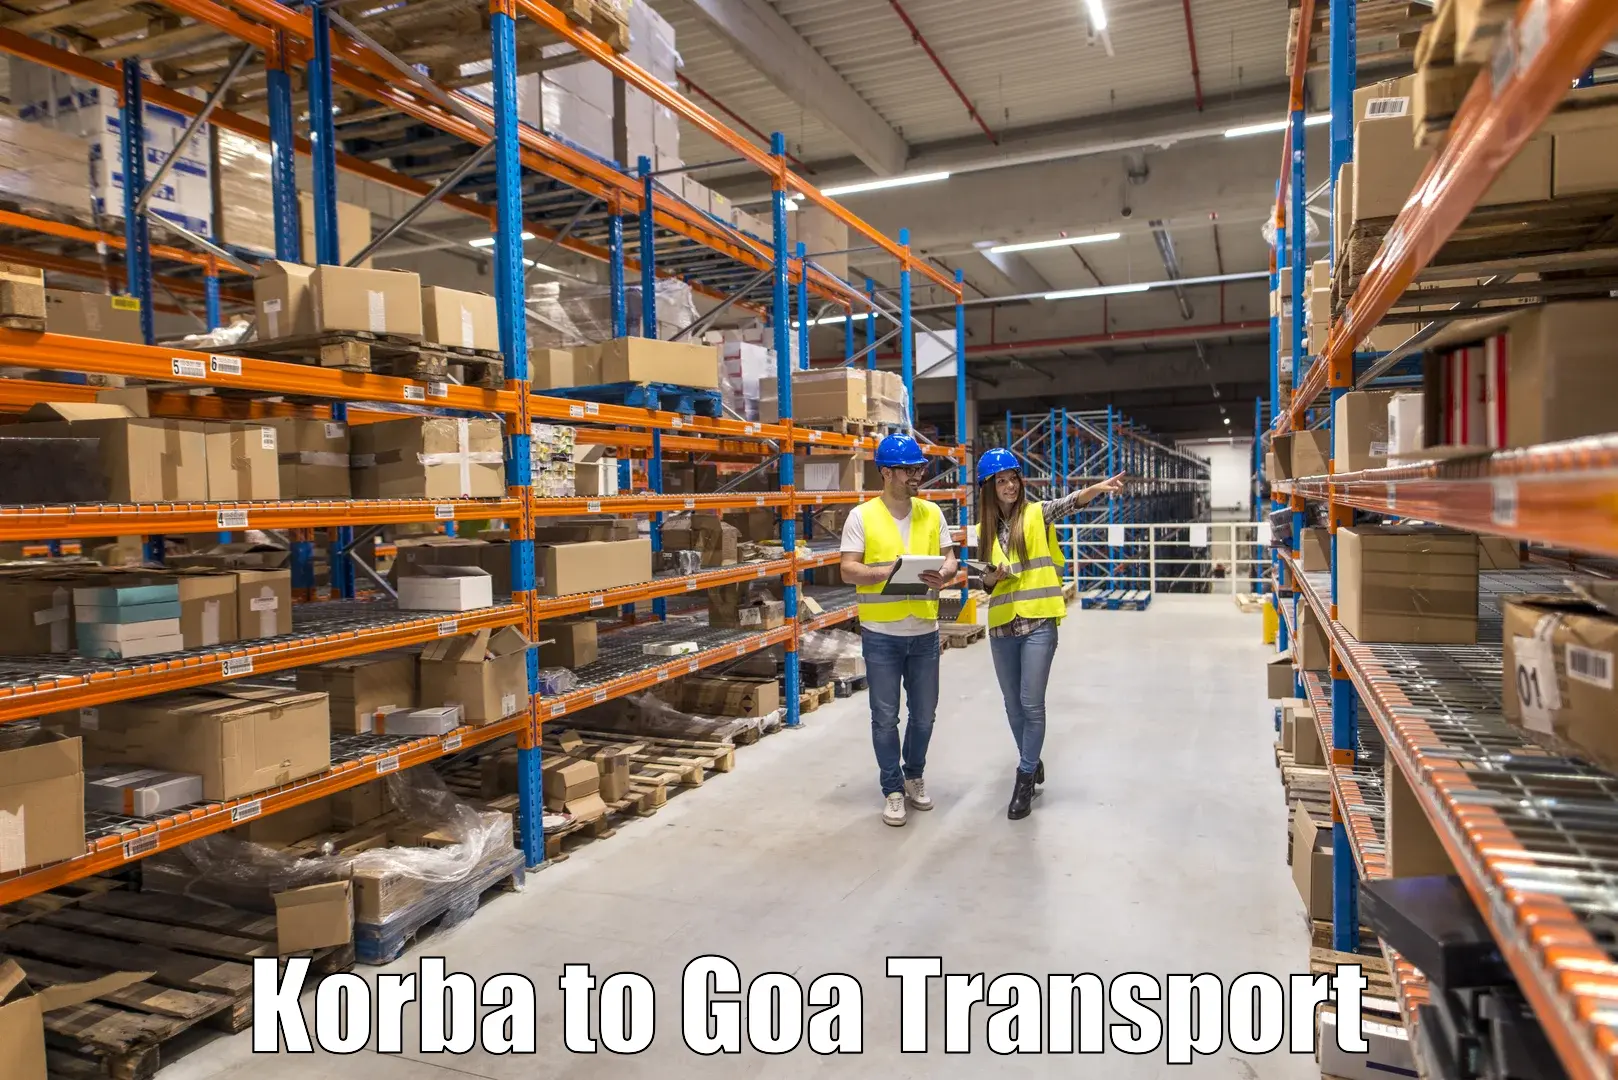 Transport services Korba to Panjim